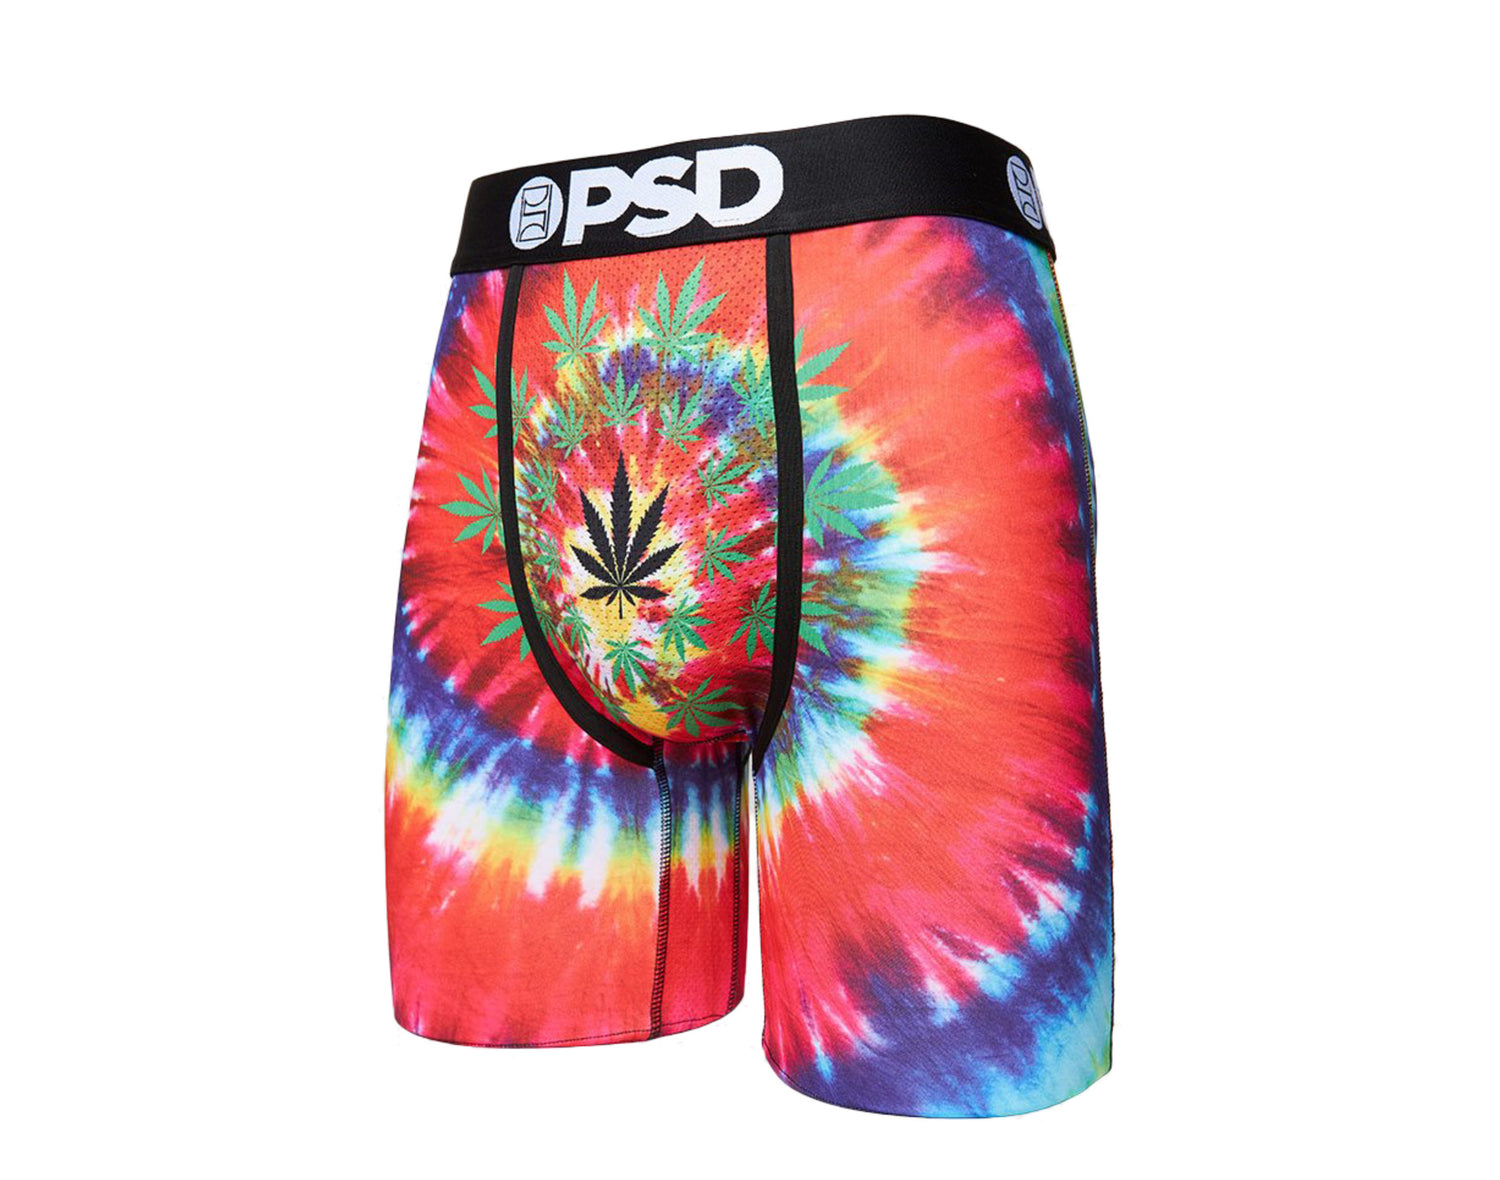 PSD Tie Dye Weed Boxer Briefs Men's Underwear